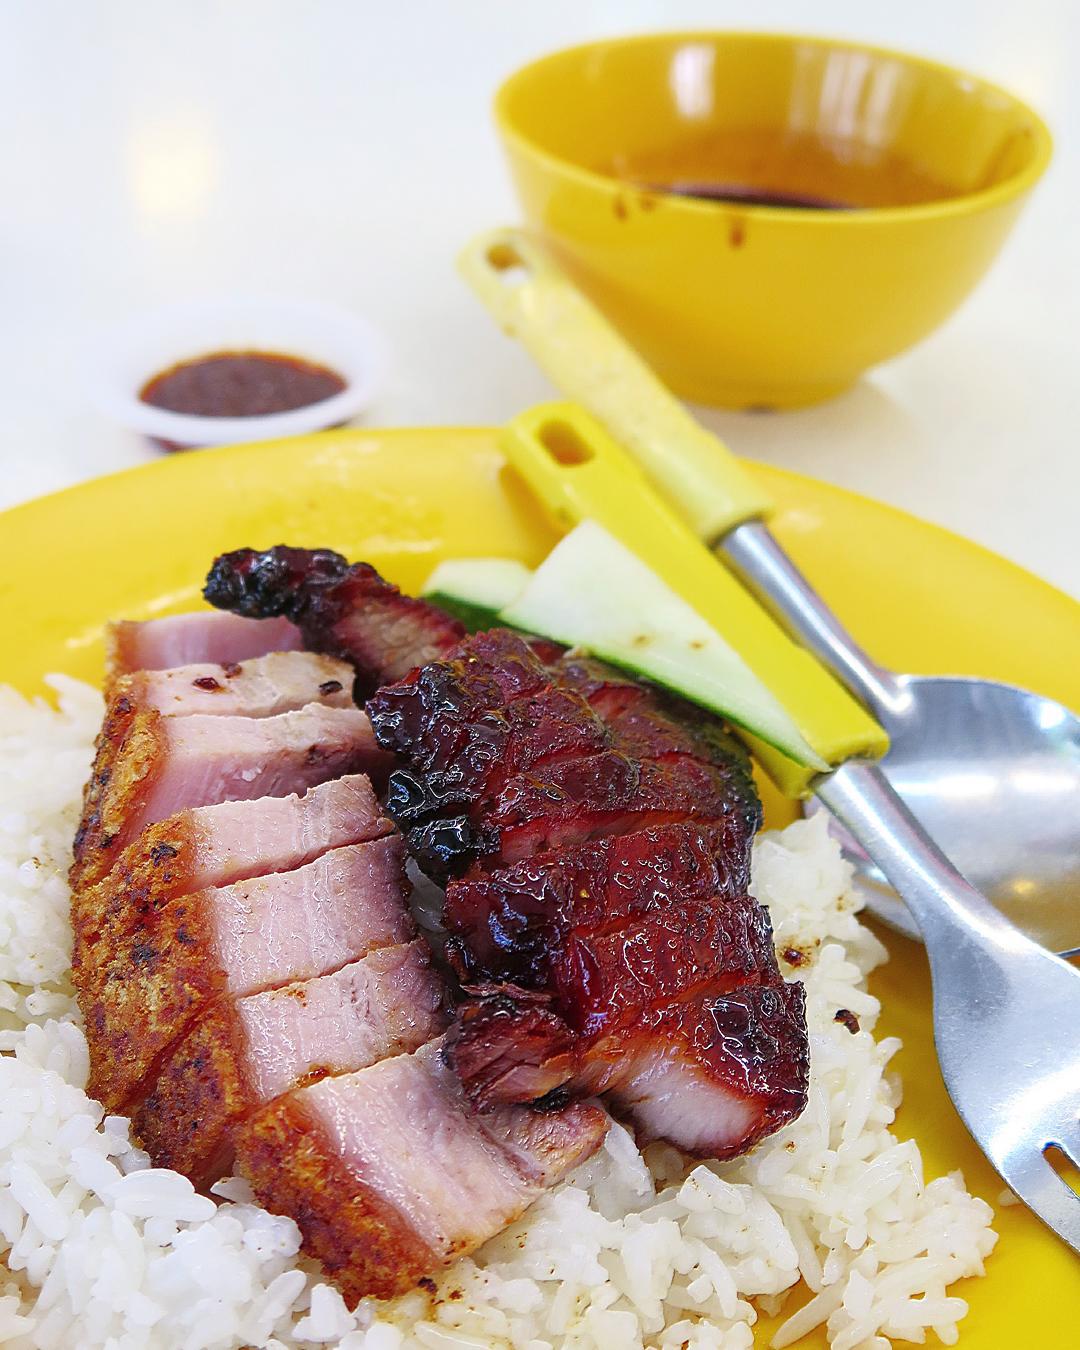 Bukit Batok Food - Xiang Ji Roast Chicken Rice & Noodles